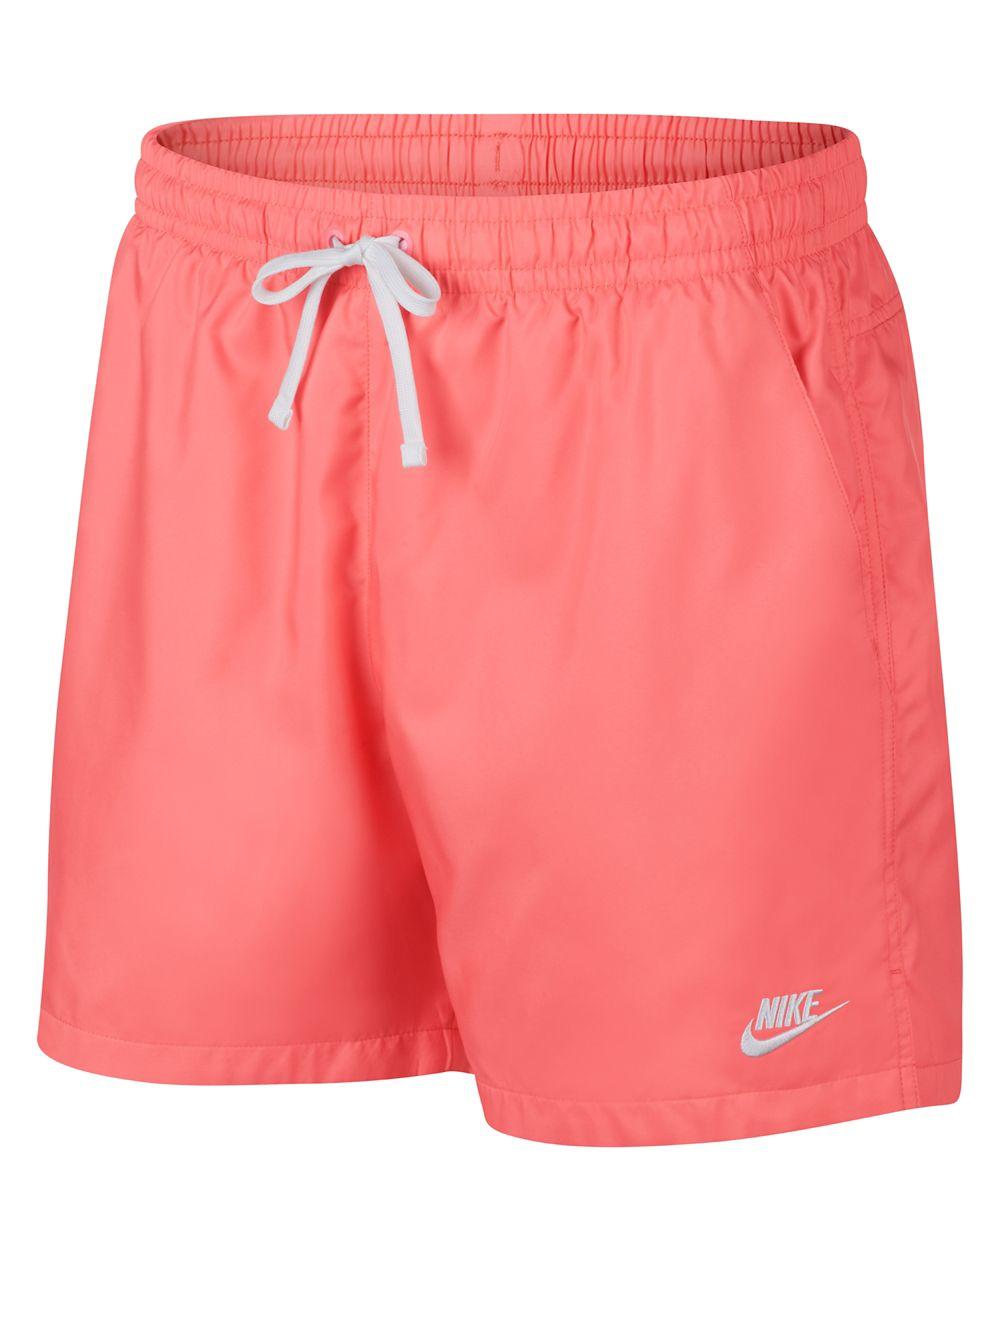 nike men pink shorts, Off 61%, www.spotsclick.com